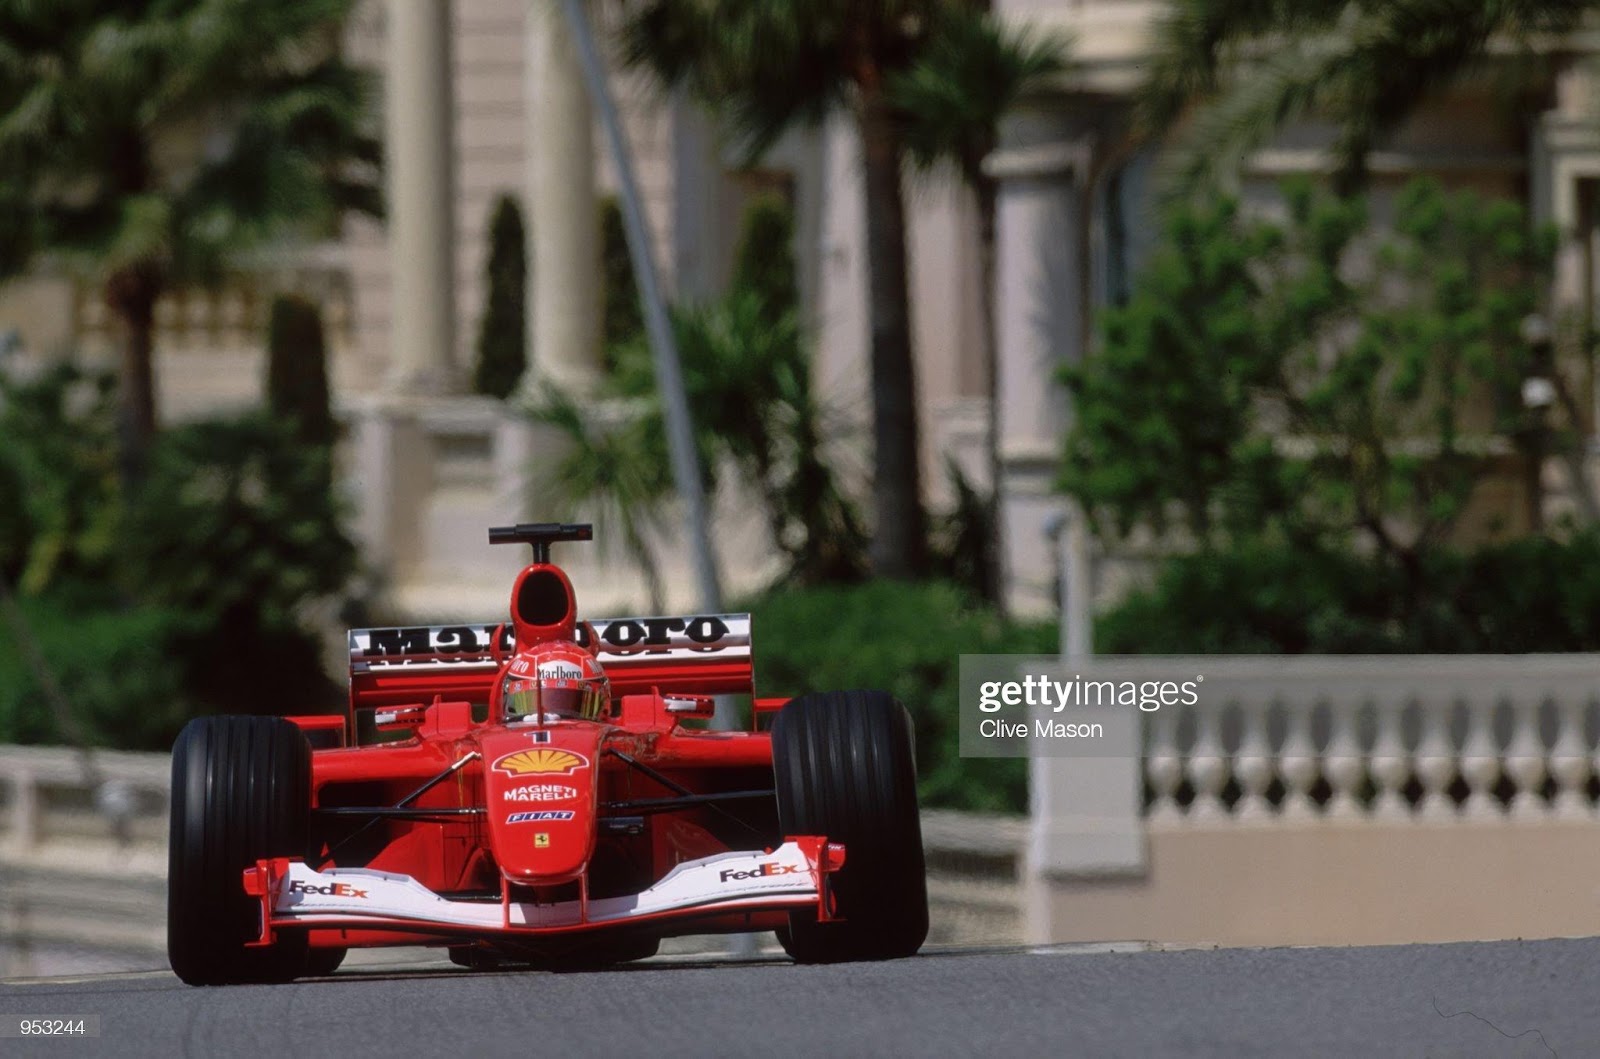 Ferrari driver Michael Schumacher in action during the Formula One Monaco Grand Prix in Monte Carlo, Monaco, on 27 May 2001.